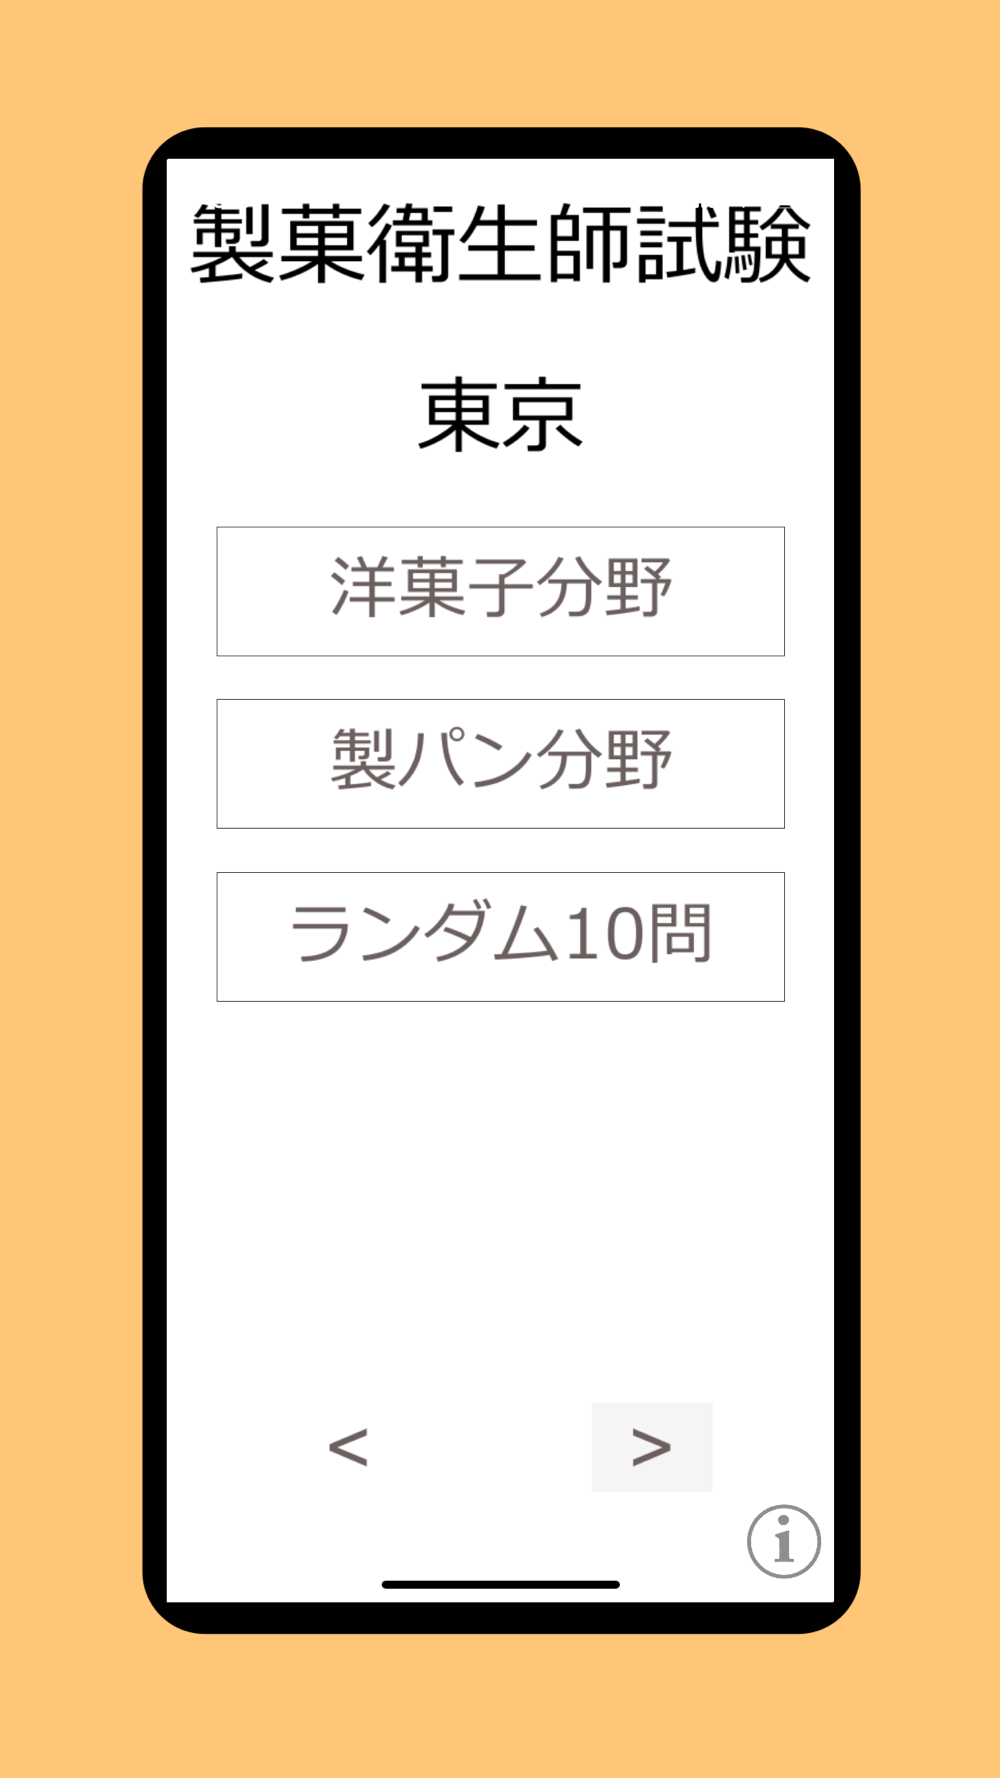 製菓衛生師 過去問 Download App For Iphone Steprimo Com